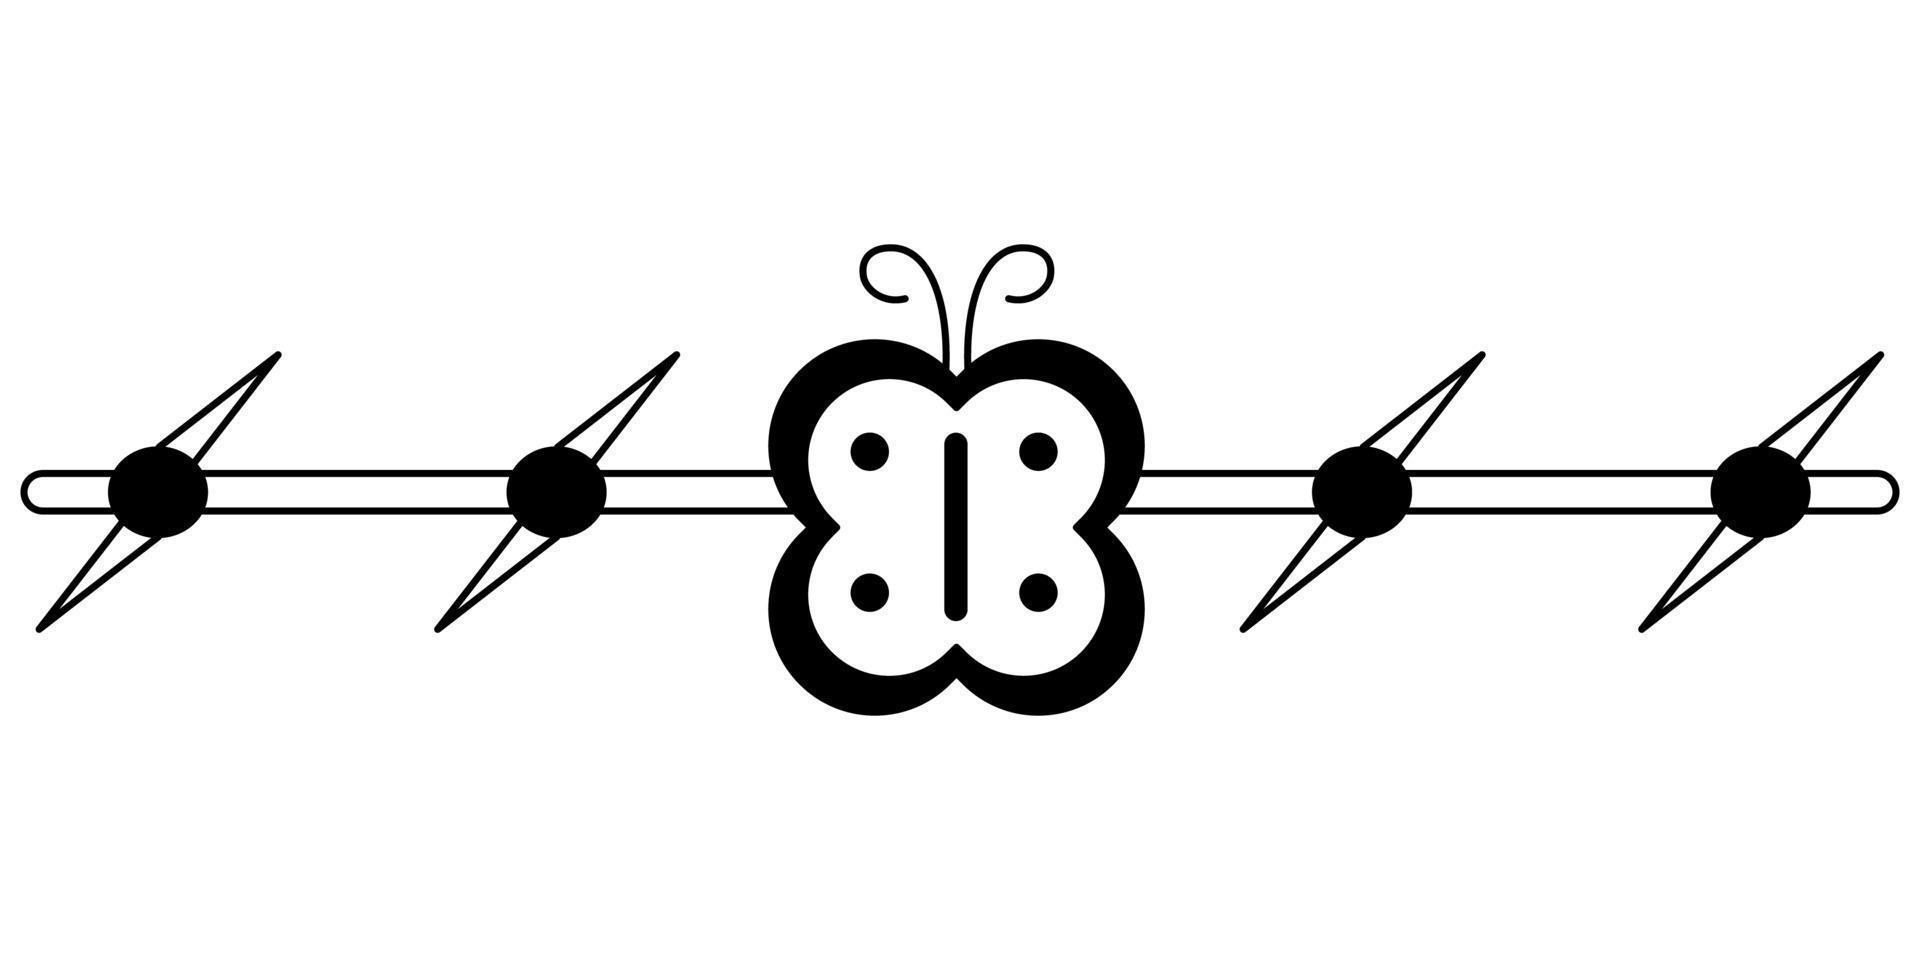 tatuaje de alambre de púas con una mariposa al estilo de los años 90, 2000. ilustración de un solo objeto en blanco y negro. vector